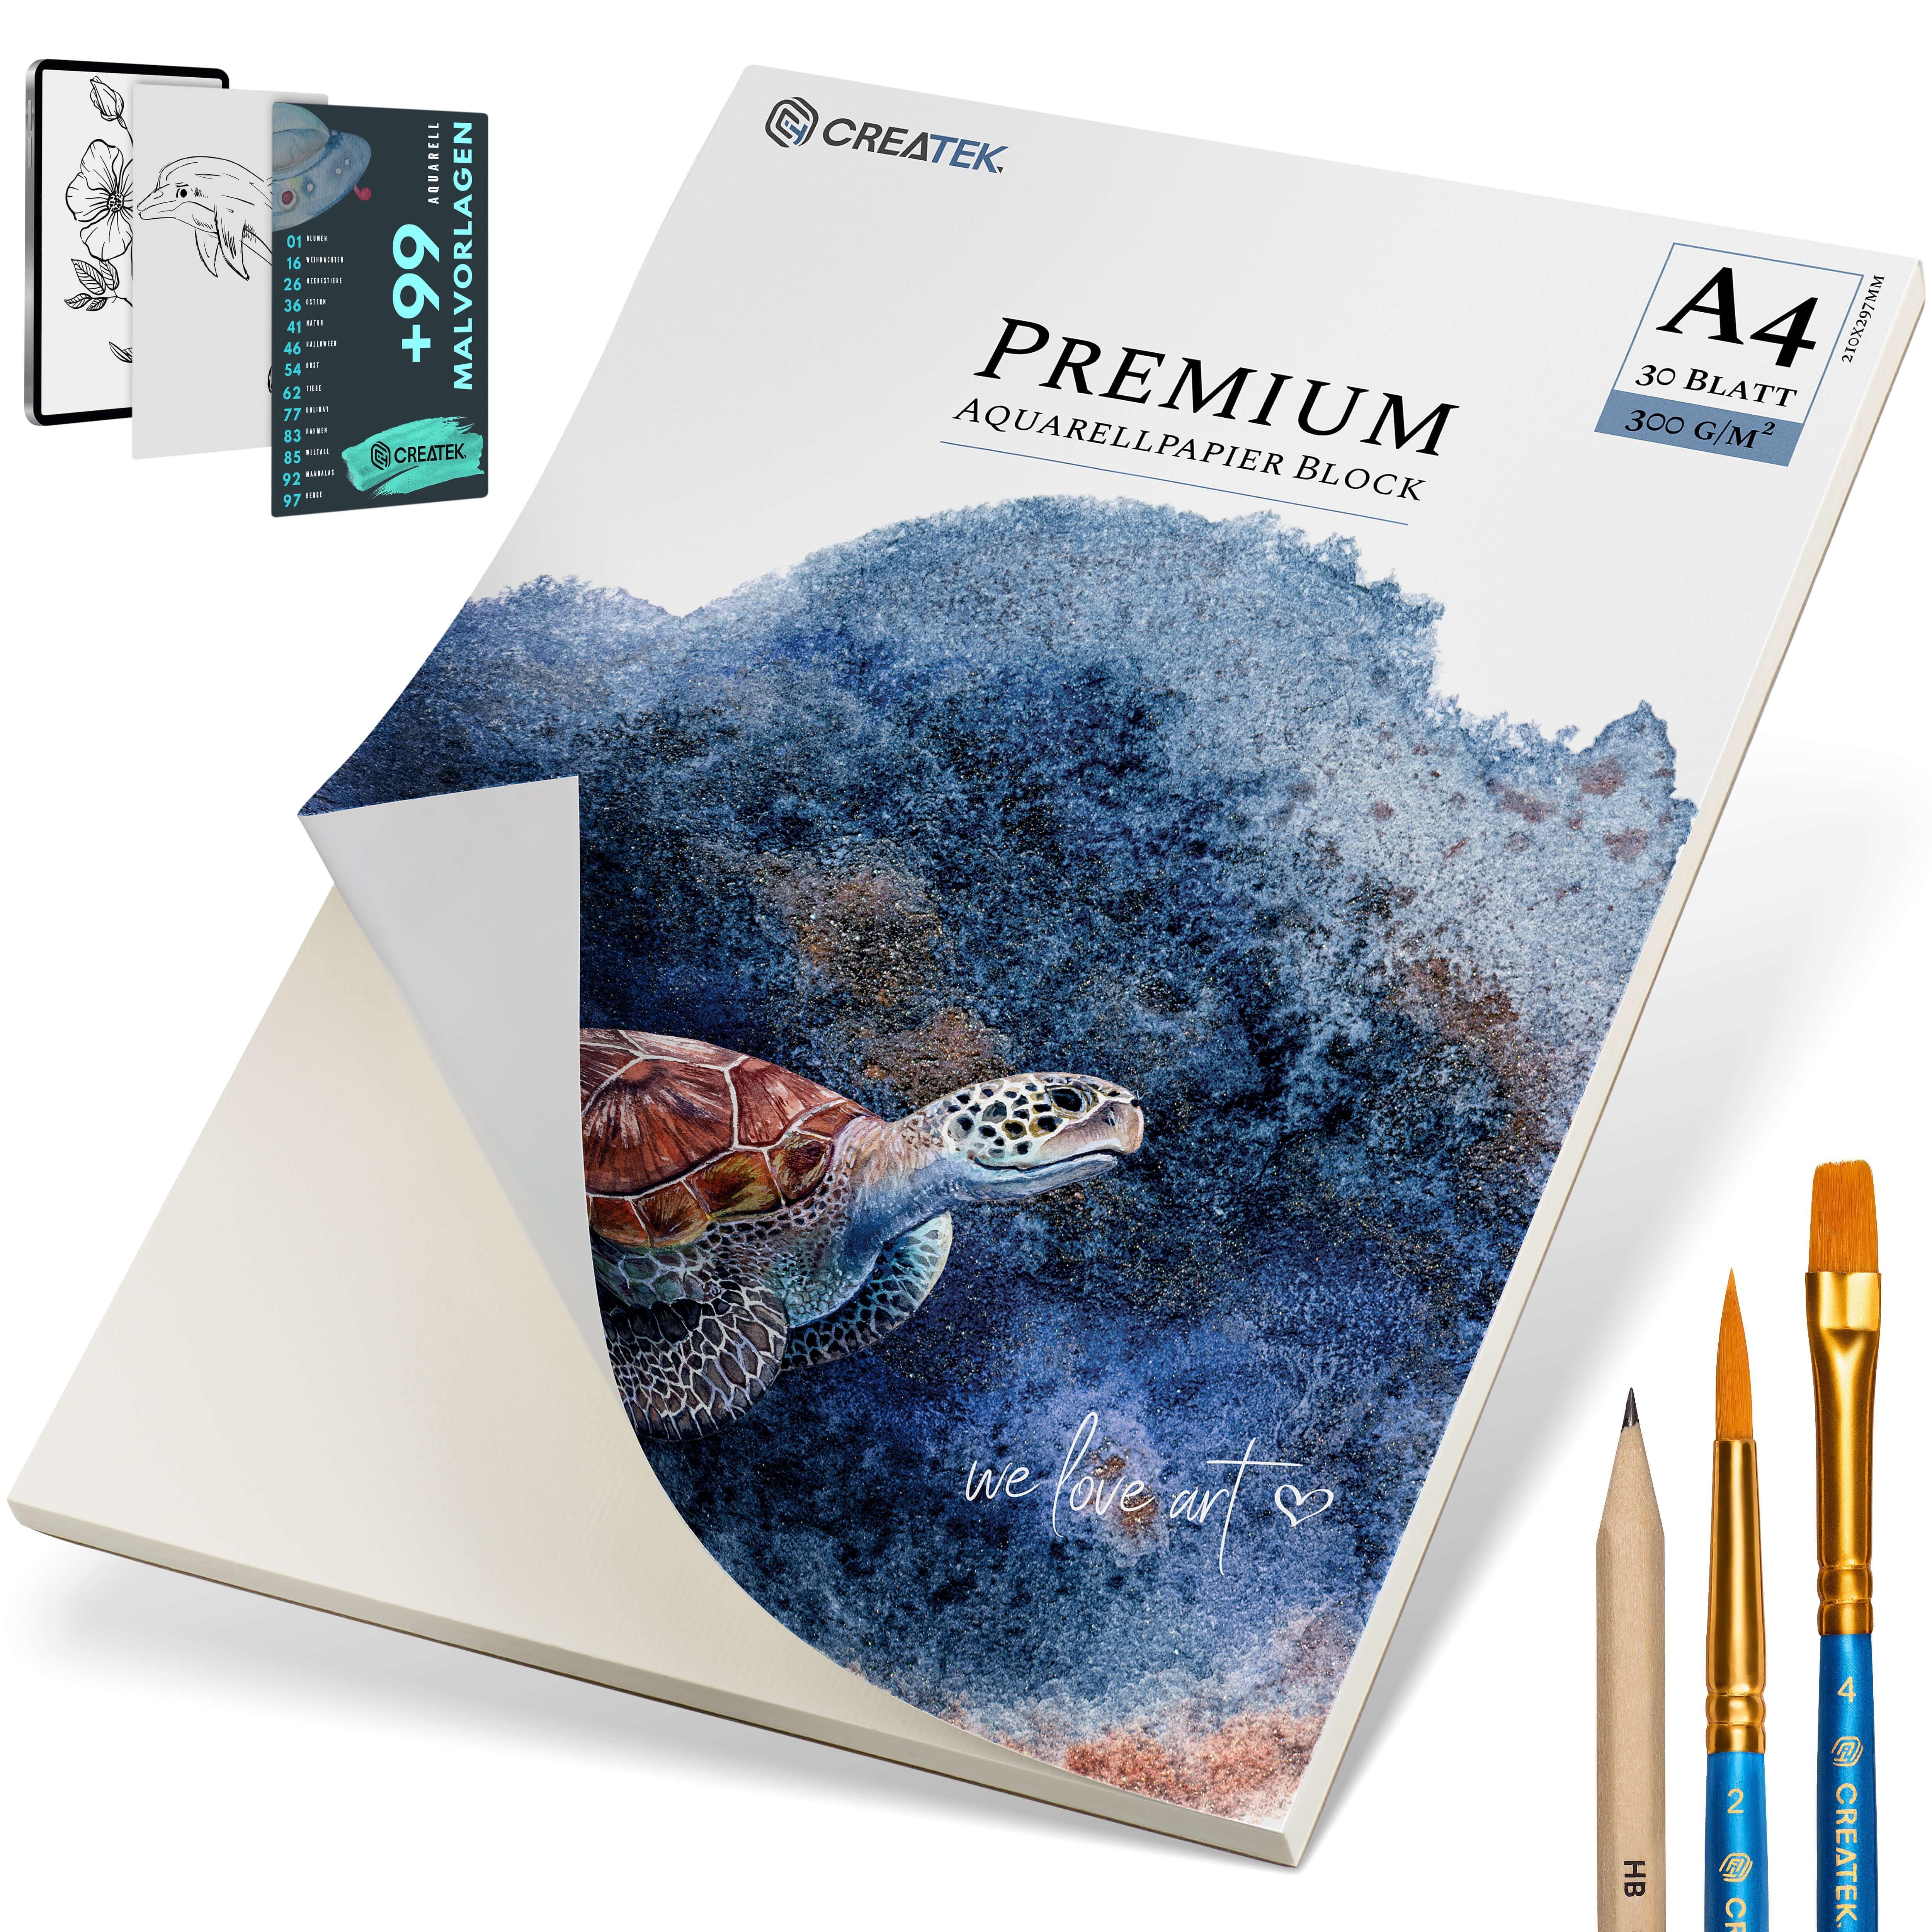 CreaTek Aquarellpapier 300g diverse uvm., STUNDEN & Pinsel Größen - + Qualität MALVORLAGEN Premium VIDEOKURS Bleistift 2 inkl. 400